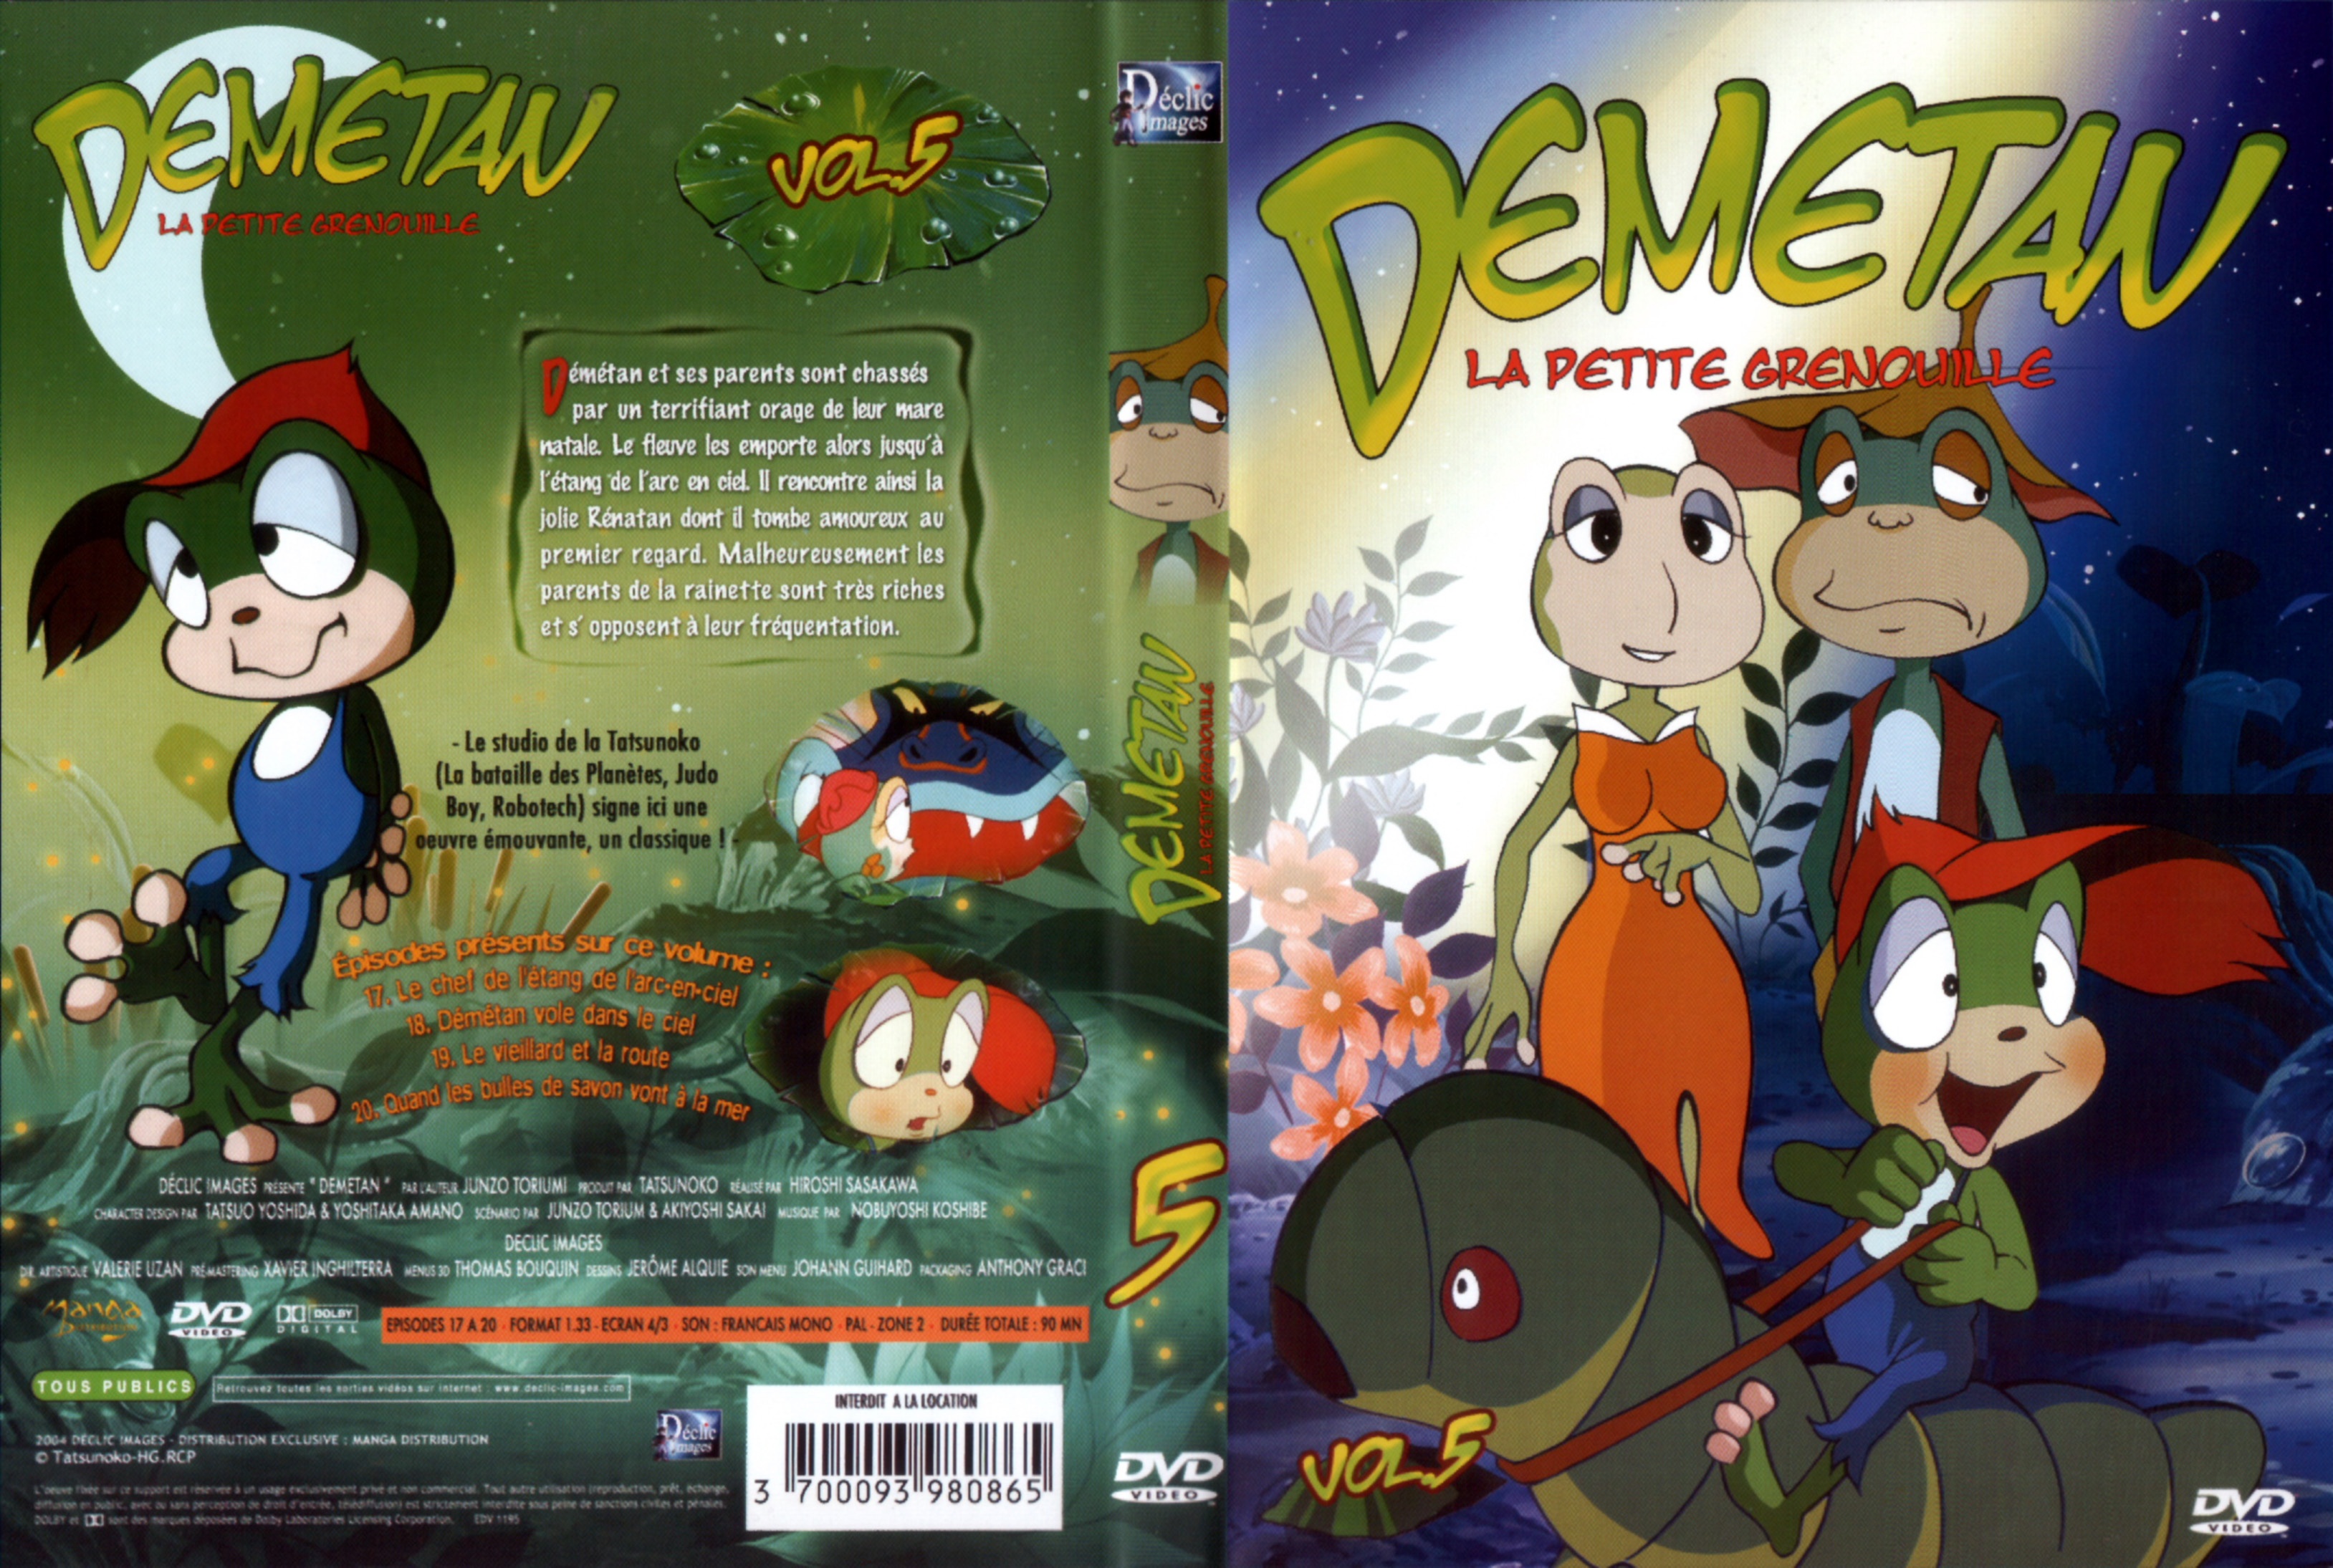 Jaquette DVD Demetan DVD 05